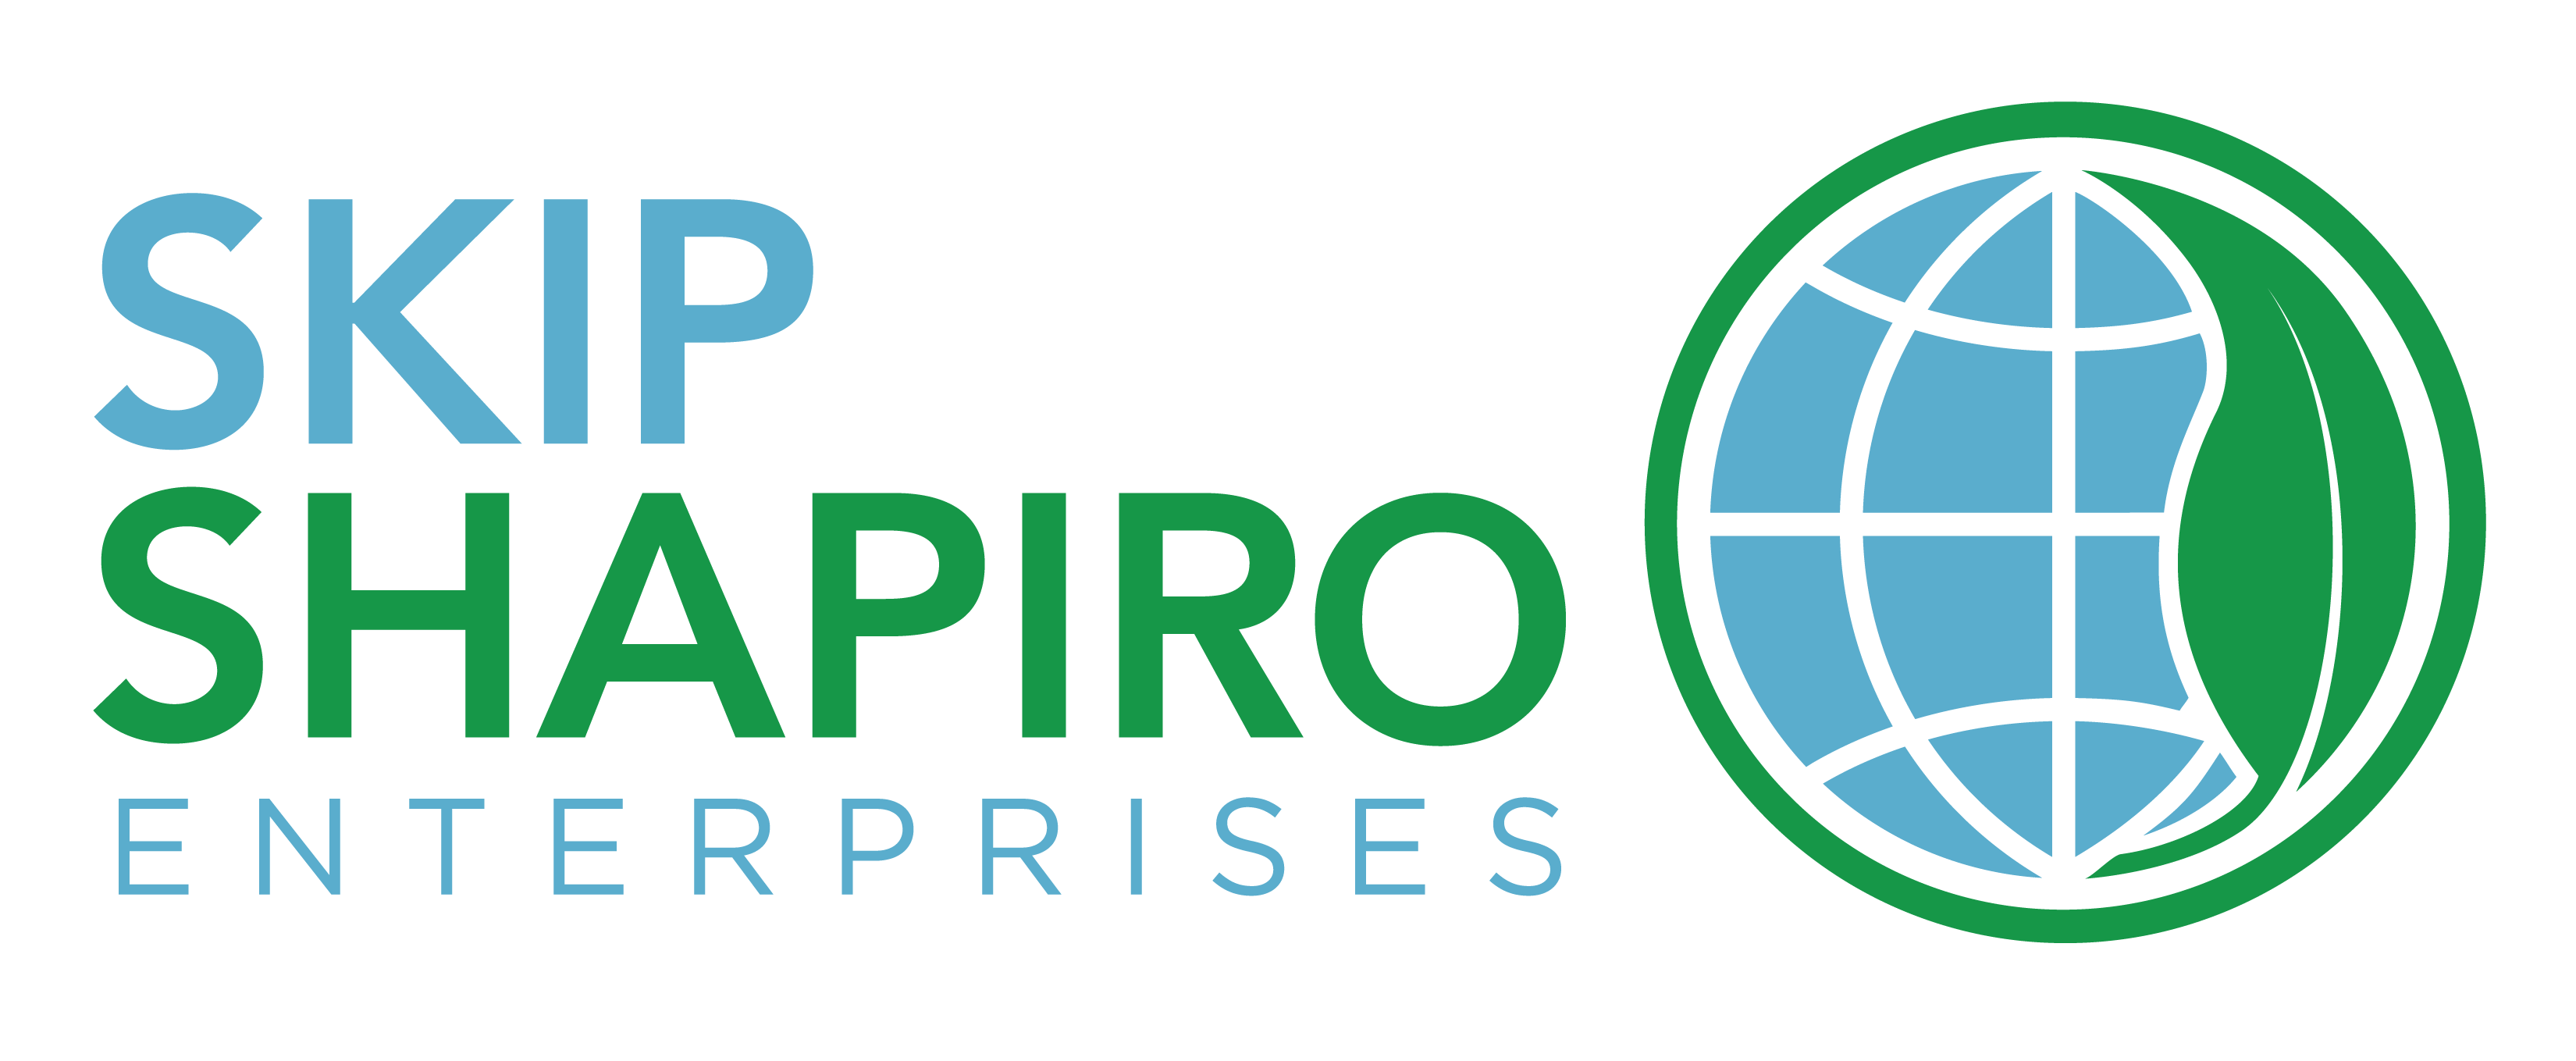 Skip Shapiro Enterprises logo